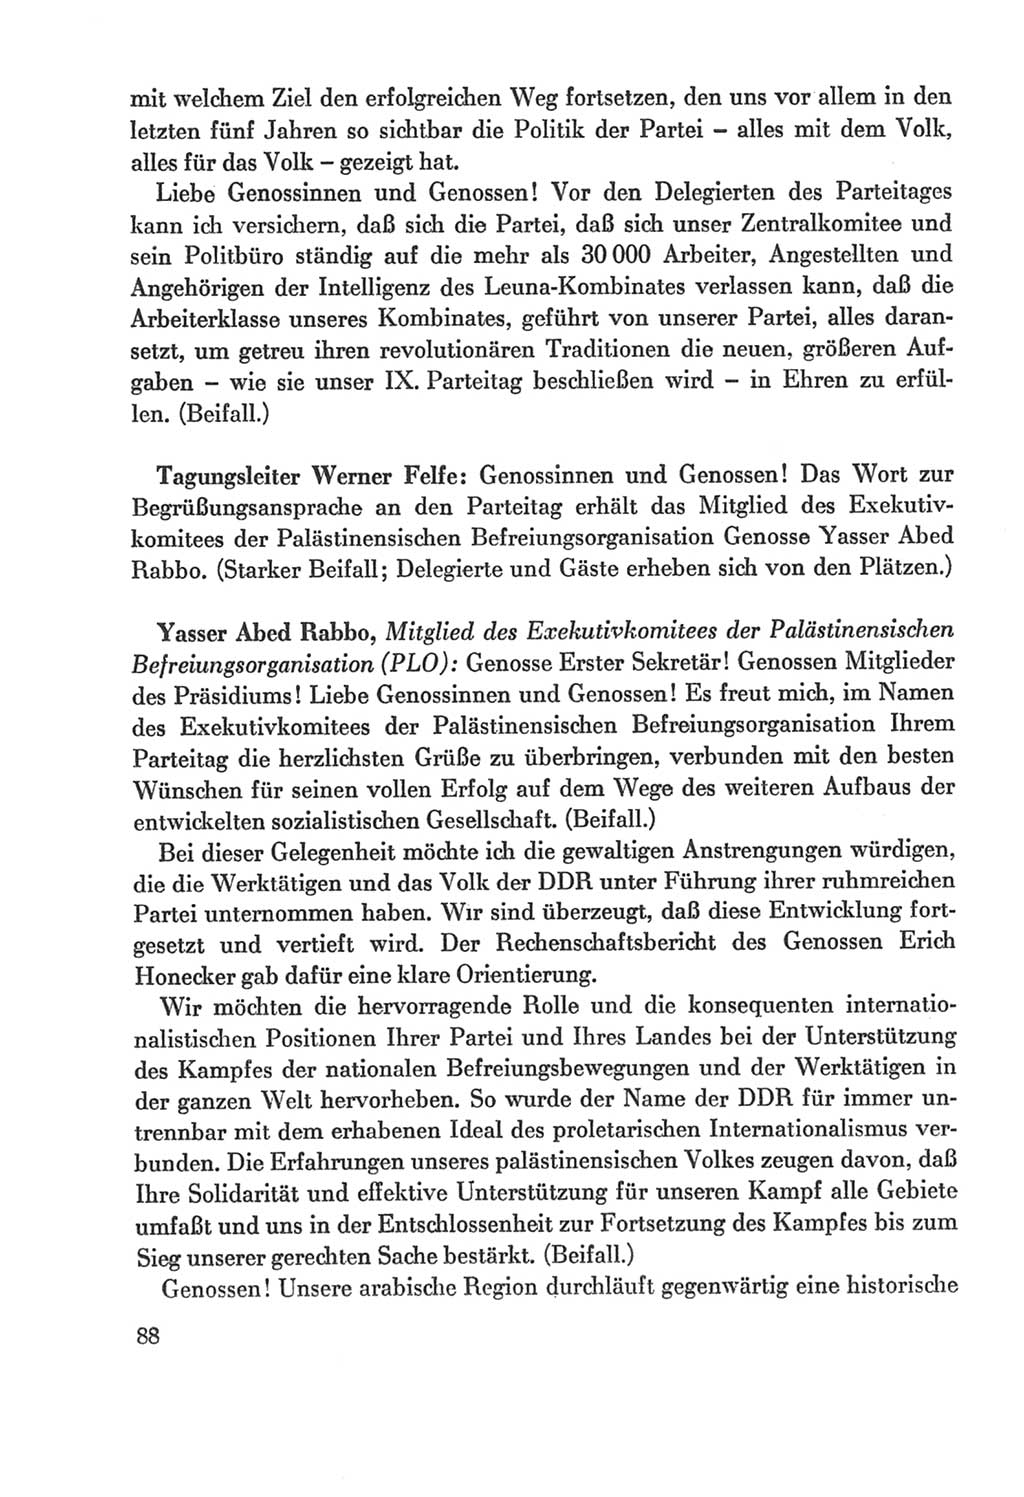 Protokoll der Verhandlungen des Ⅸ. Parteitages der Sozialistischen Einheitspartei Deutschlands (SED) [Deutsche Demokratische Republik (DDR)] 1976, Band 2, Seite 88 (Prot. Verh. Ⅸ. PT SED DDR 1976, Bd. 2, S. 88)